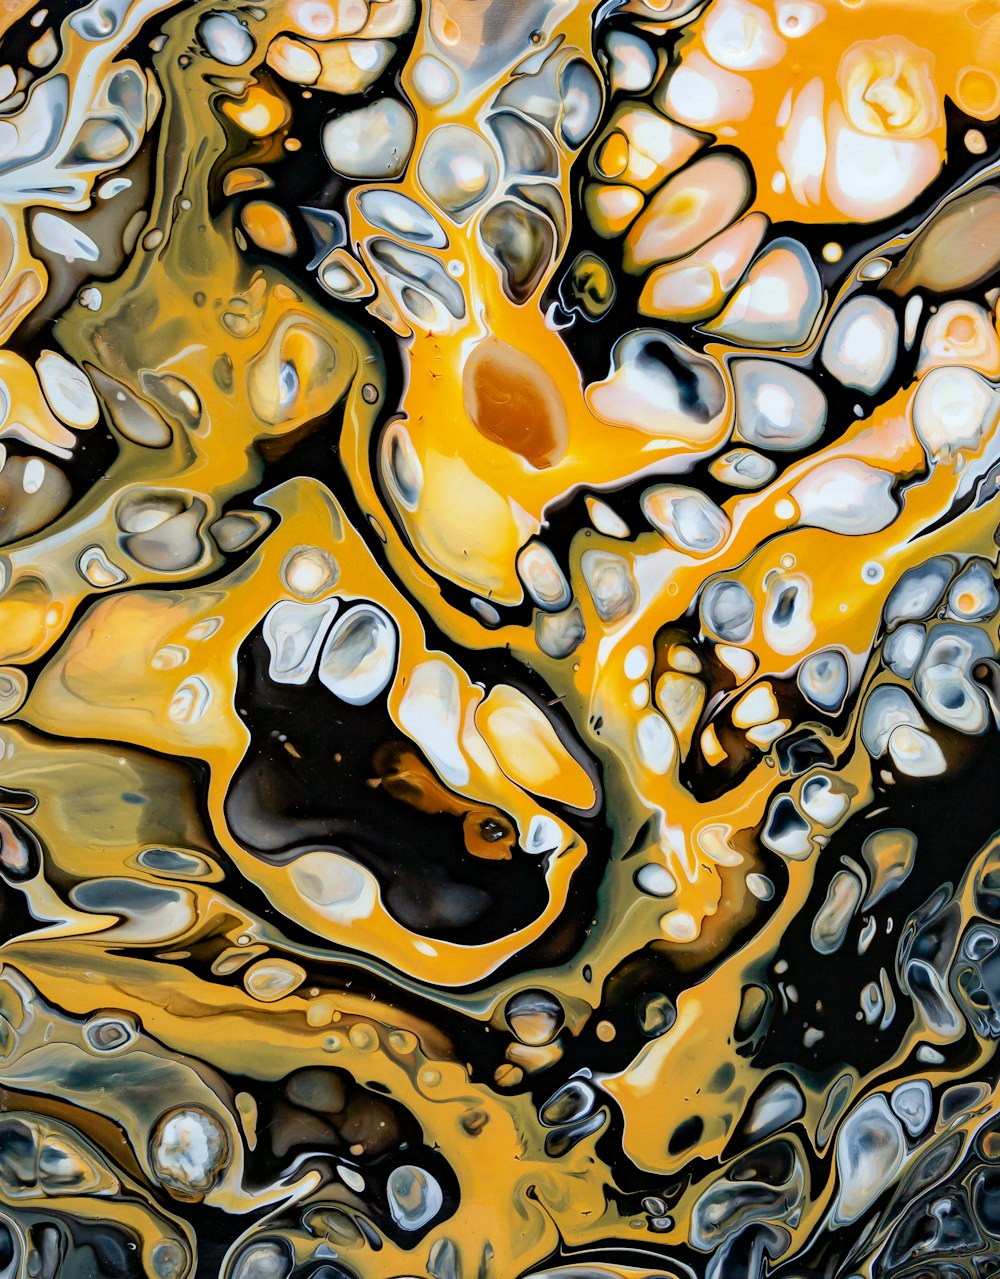 Una pintura abstracta de burbujas amarillas y negras